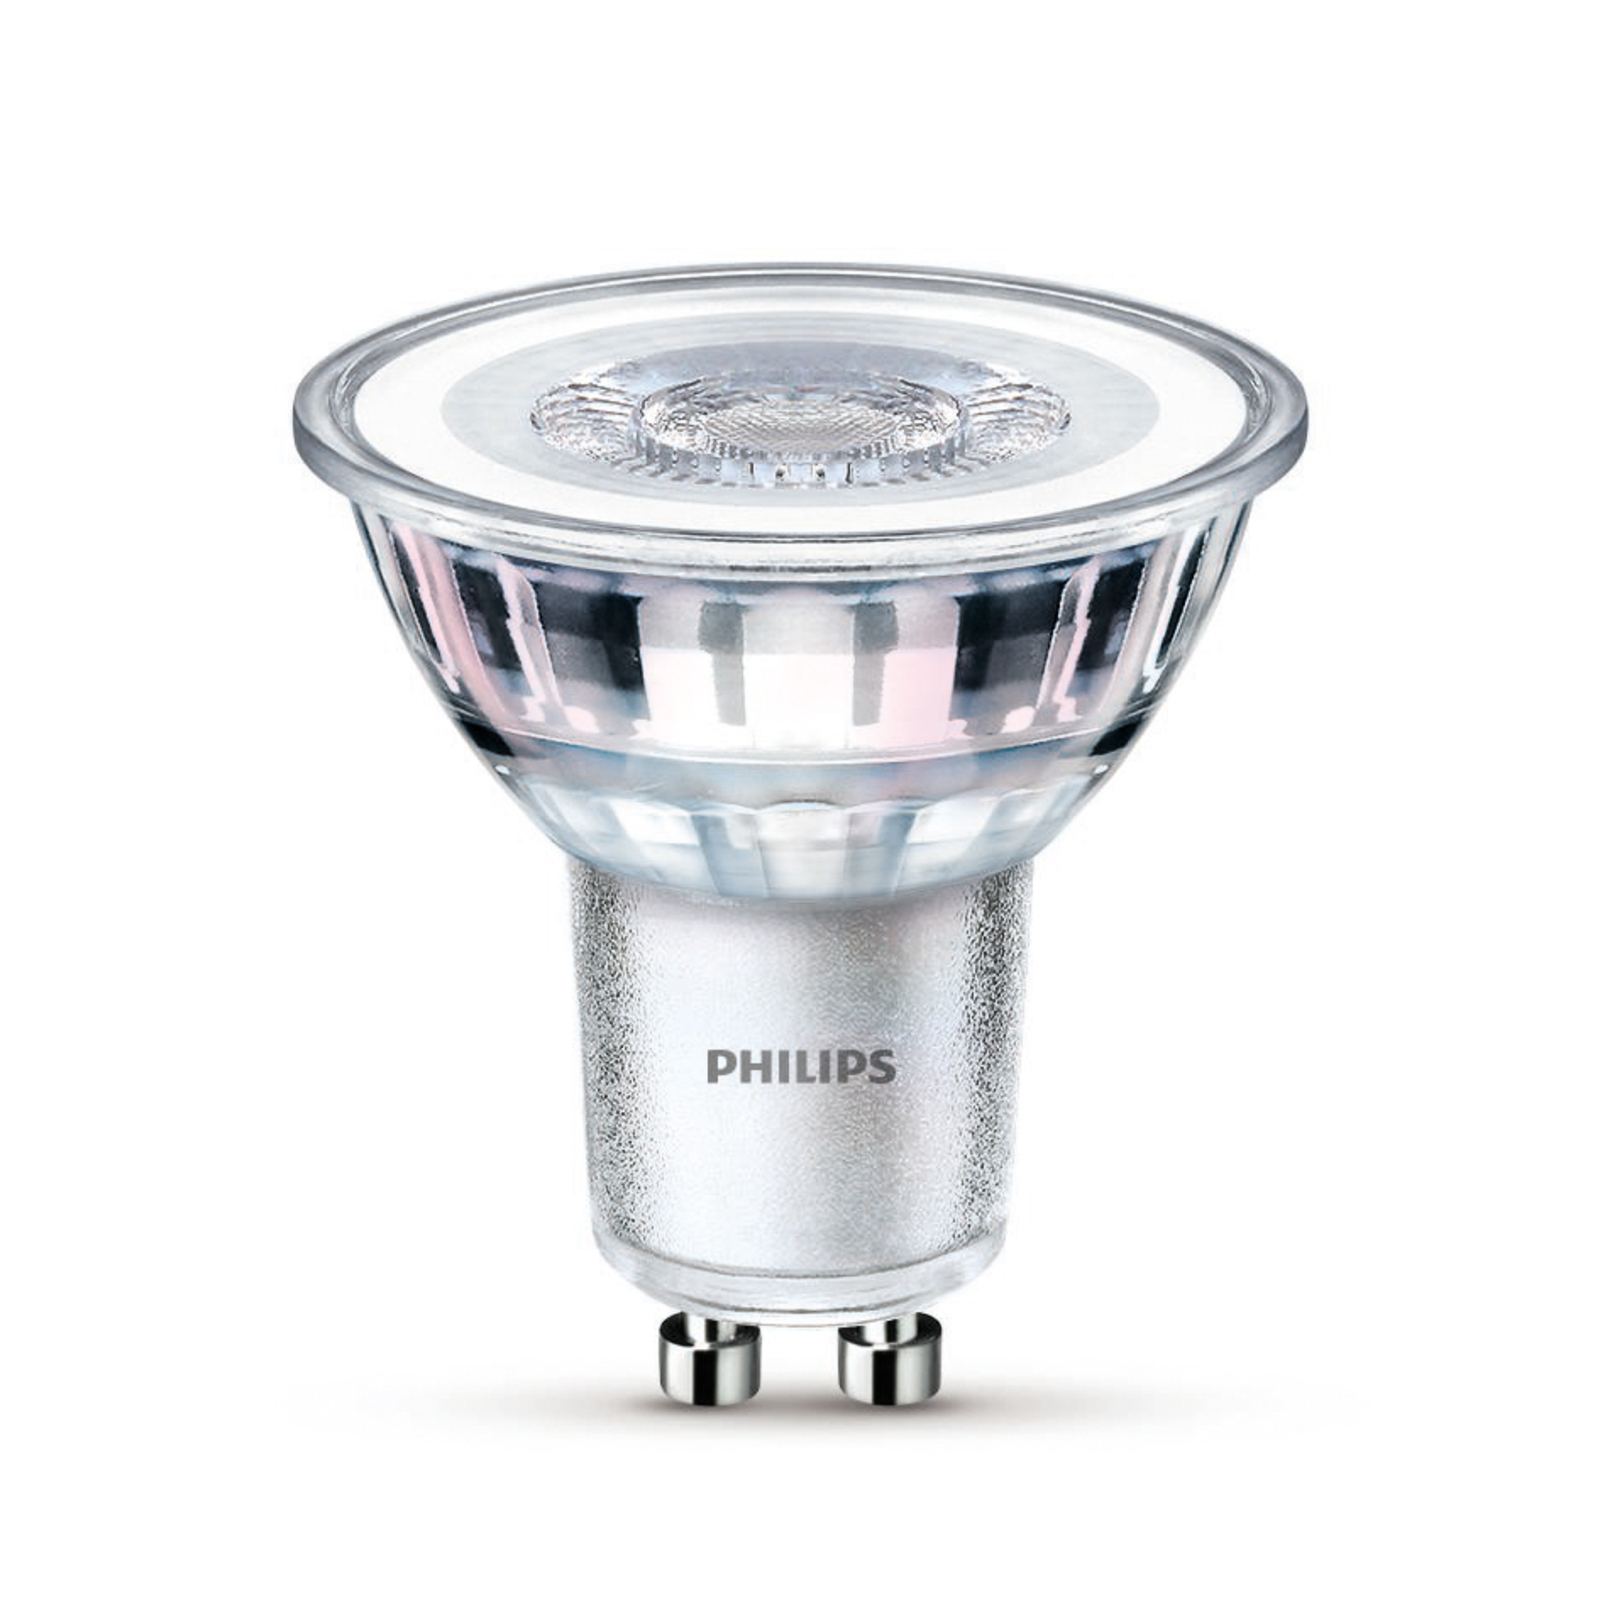 "Philips" LED lempa GU10 3,5W 275lm 840 skaidri 36° 6vnt